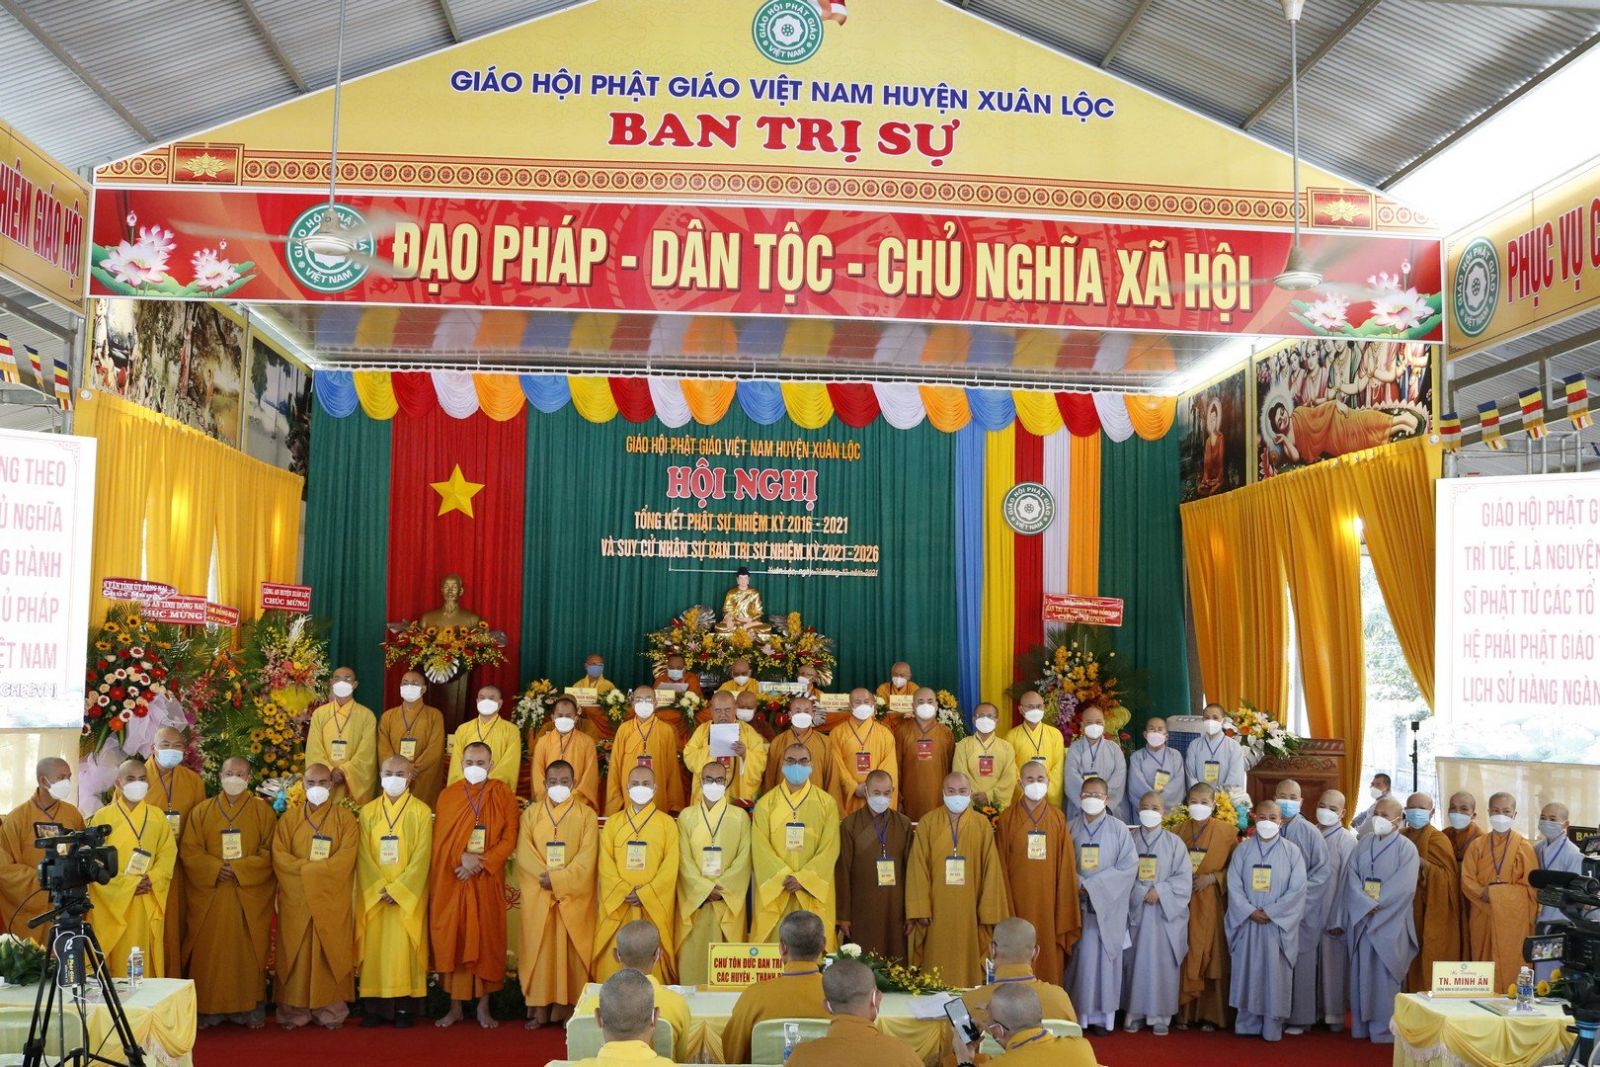 Đồng Nai: Phật giáo huyện Xuân Lộc tổ chức hội nghị tổng kết Phật sự nhiệm kỳ 2016 – 2021 và suy cử tân BTS nhiệm kỳ 2021 - 2026